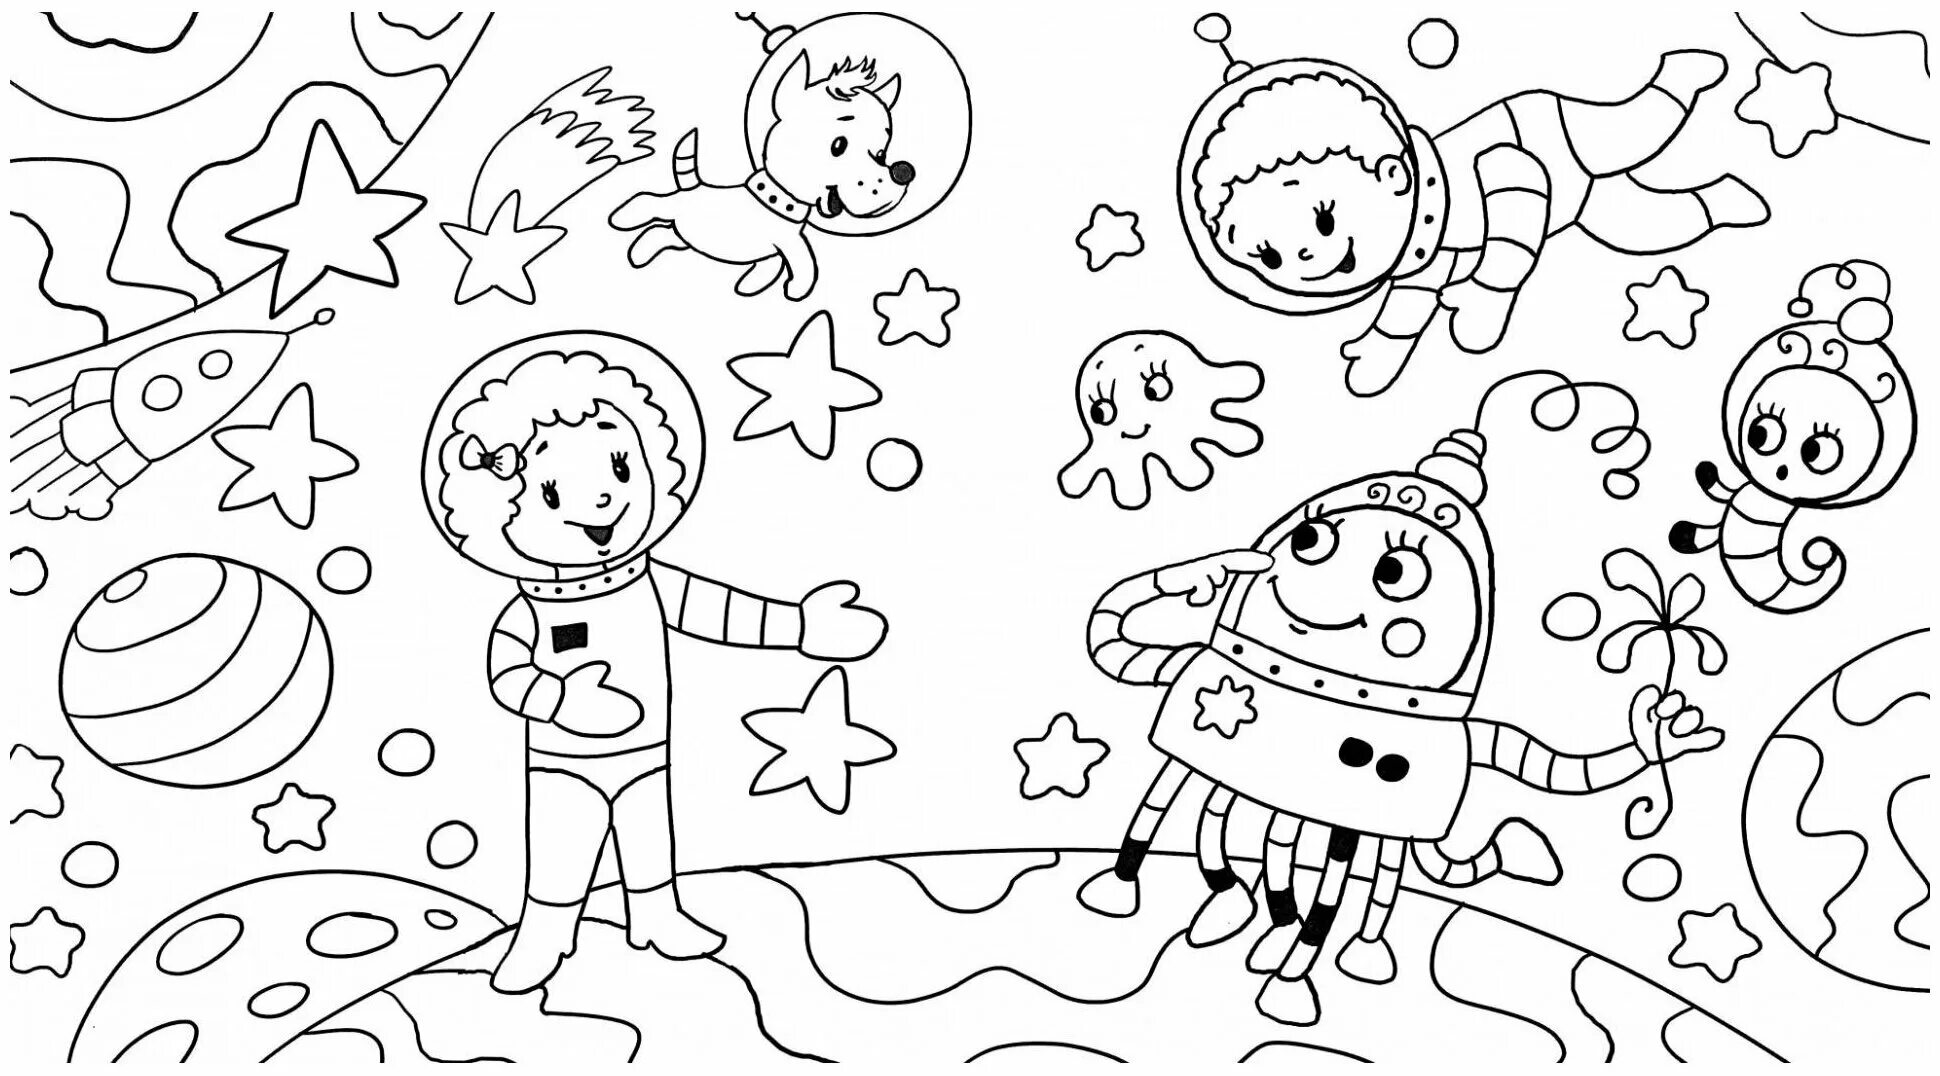 Тема космос для детей 4 лет. Раскраска. В космосе. Космос раскраска для детей. Космические раскраски для детей. Раскраски для детей космас.